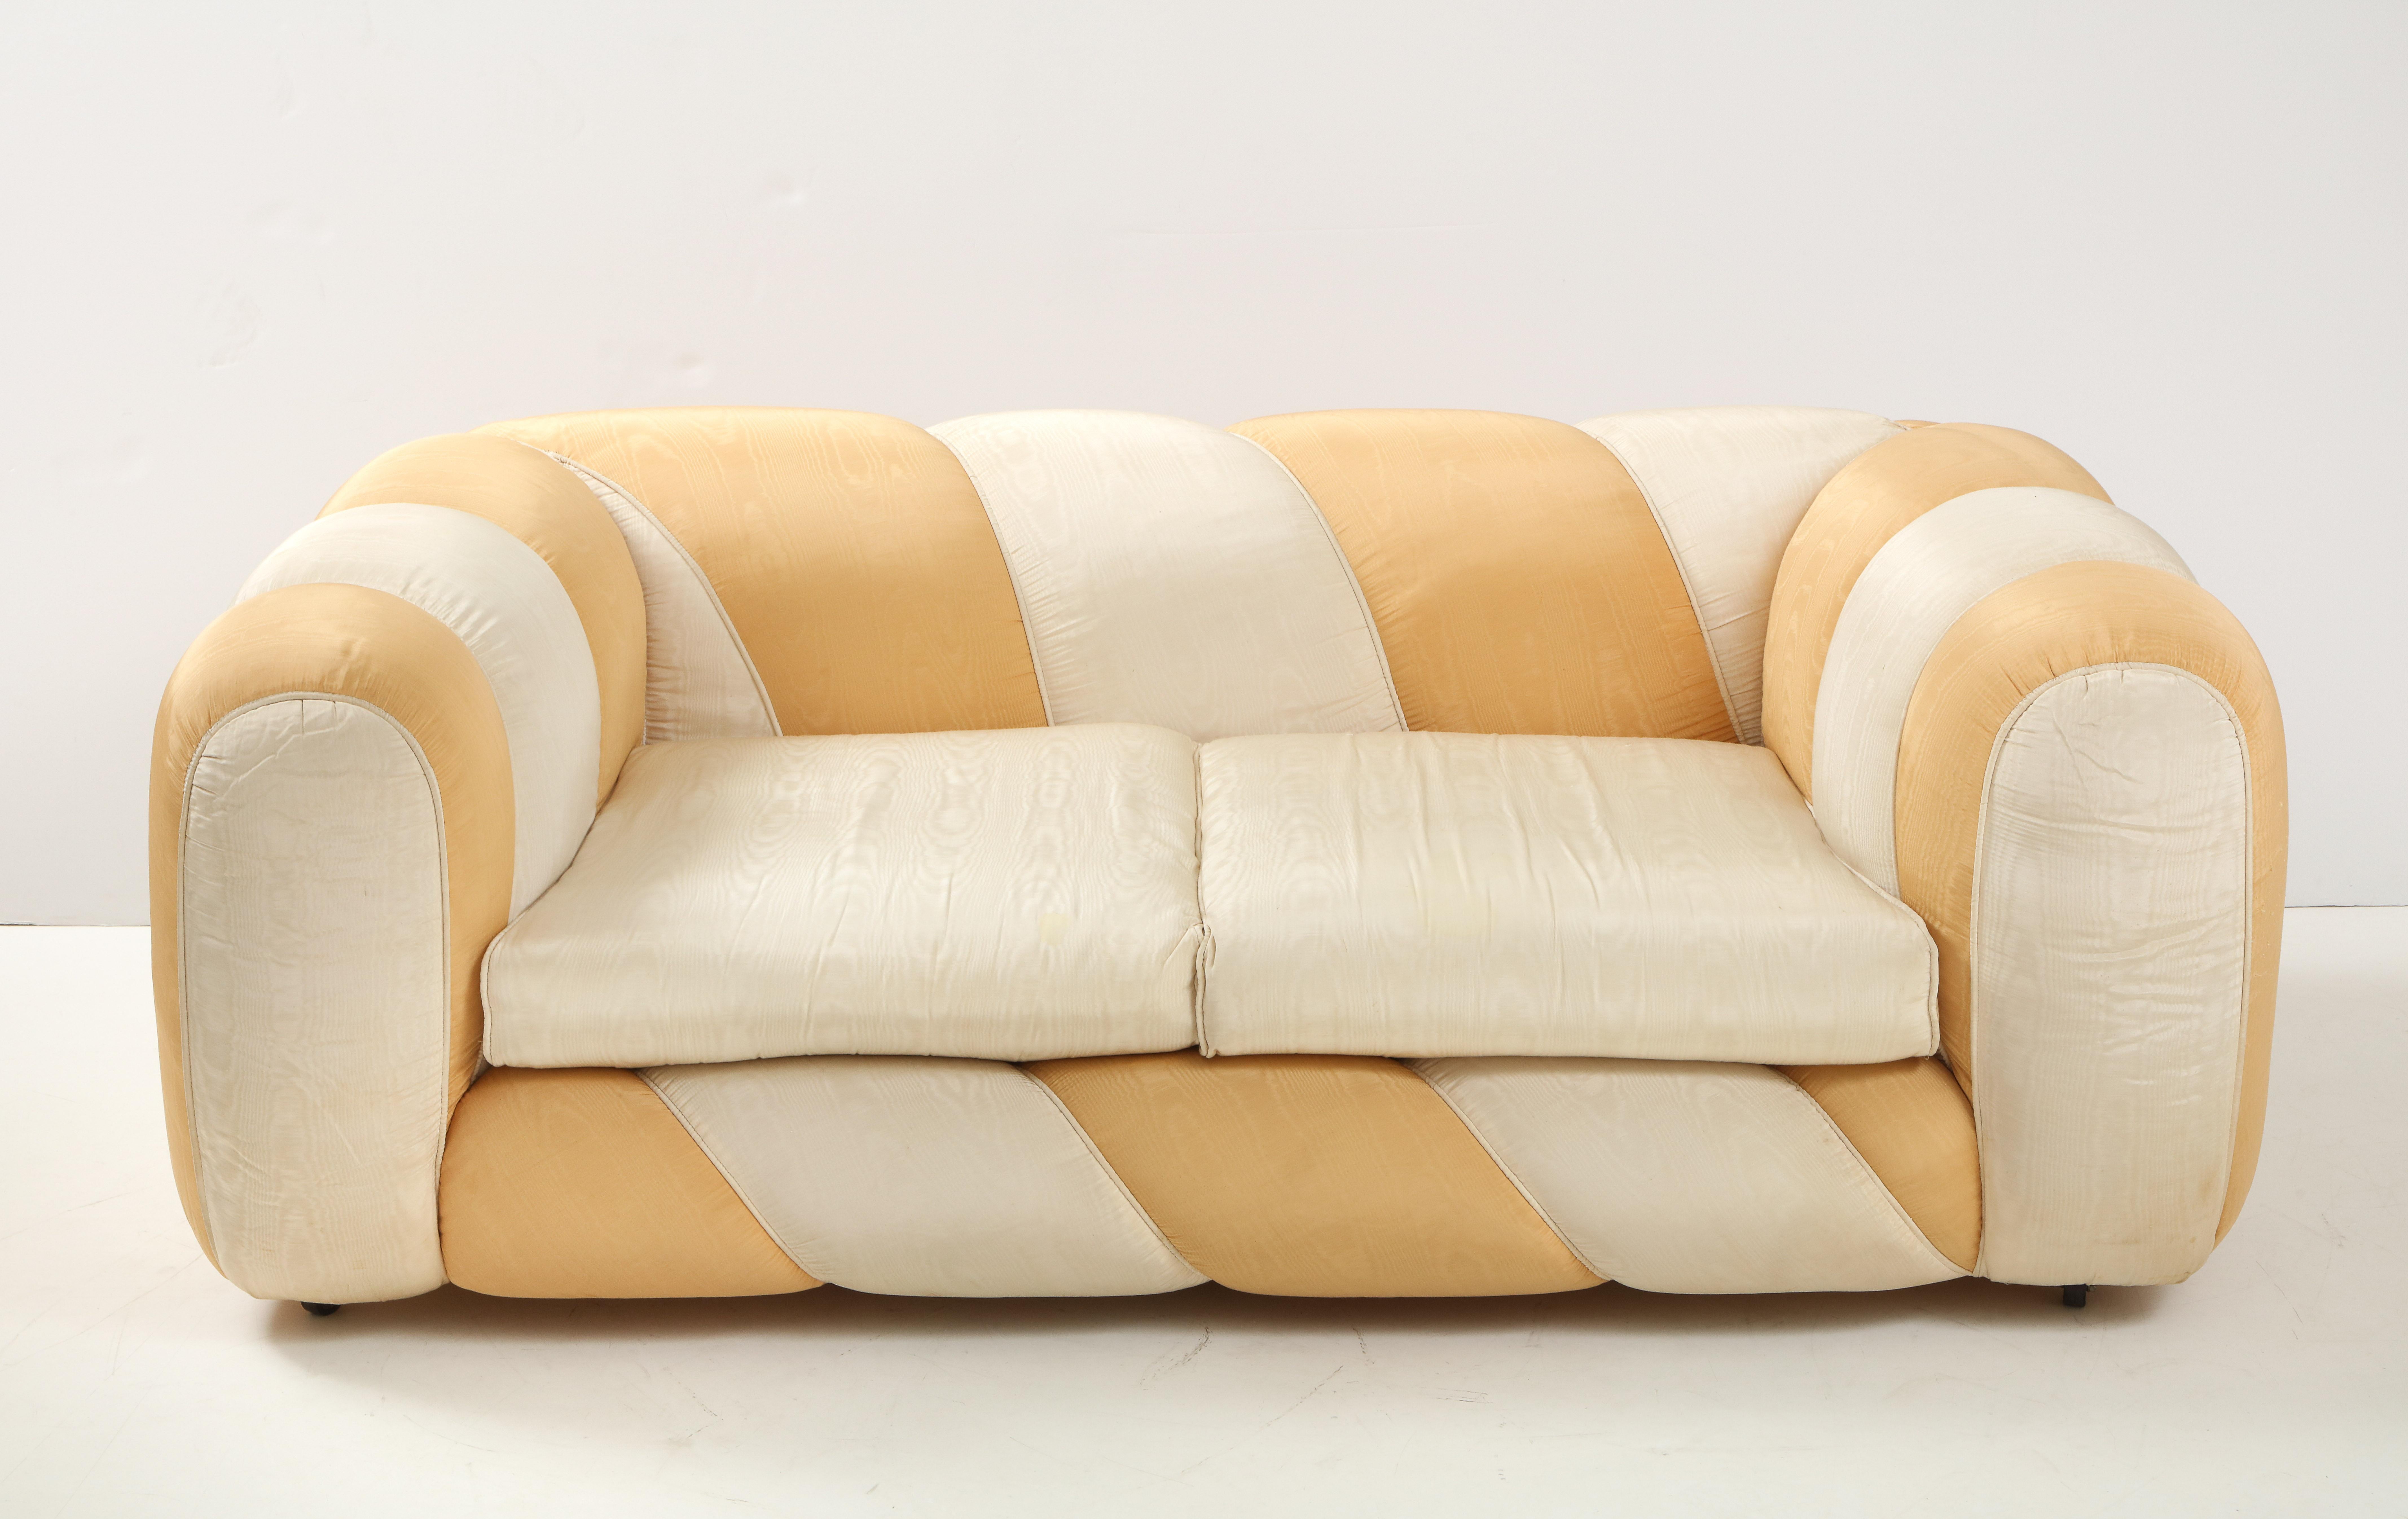 Ein lebhaftes und fröhliches Vivai del Sud Zweisitzer-Sofa in goldenem und cremefarbenem Seidenmoire-Stoff; Originalpolsterung. Die glatte und sinnliche Form, kombiniert mit der süßen Farbe, erzeugt ein fast bonbonartiges Aussehen. Das Design, die